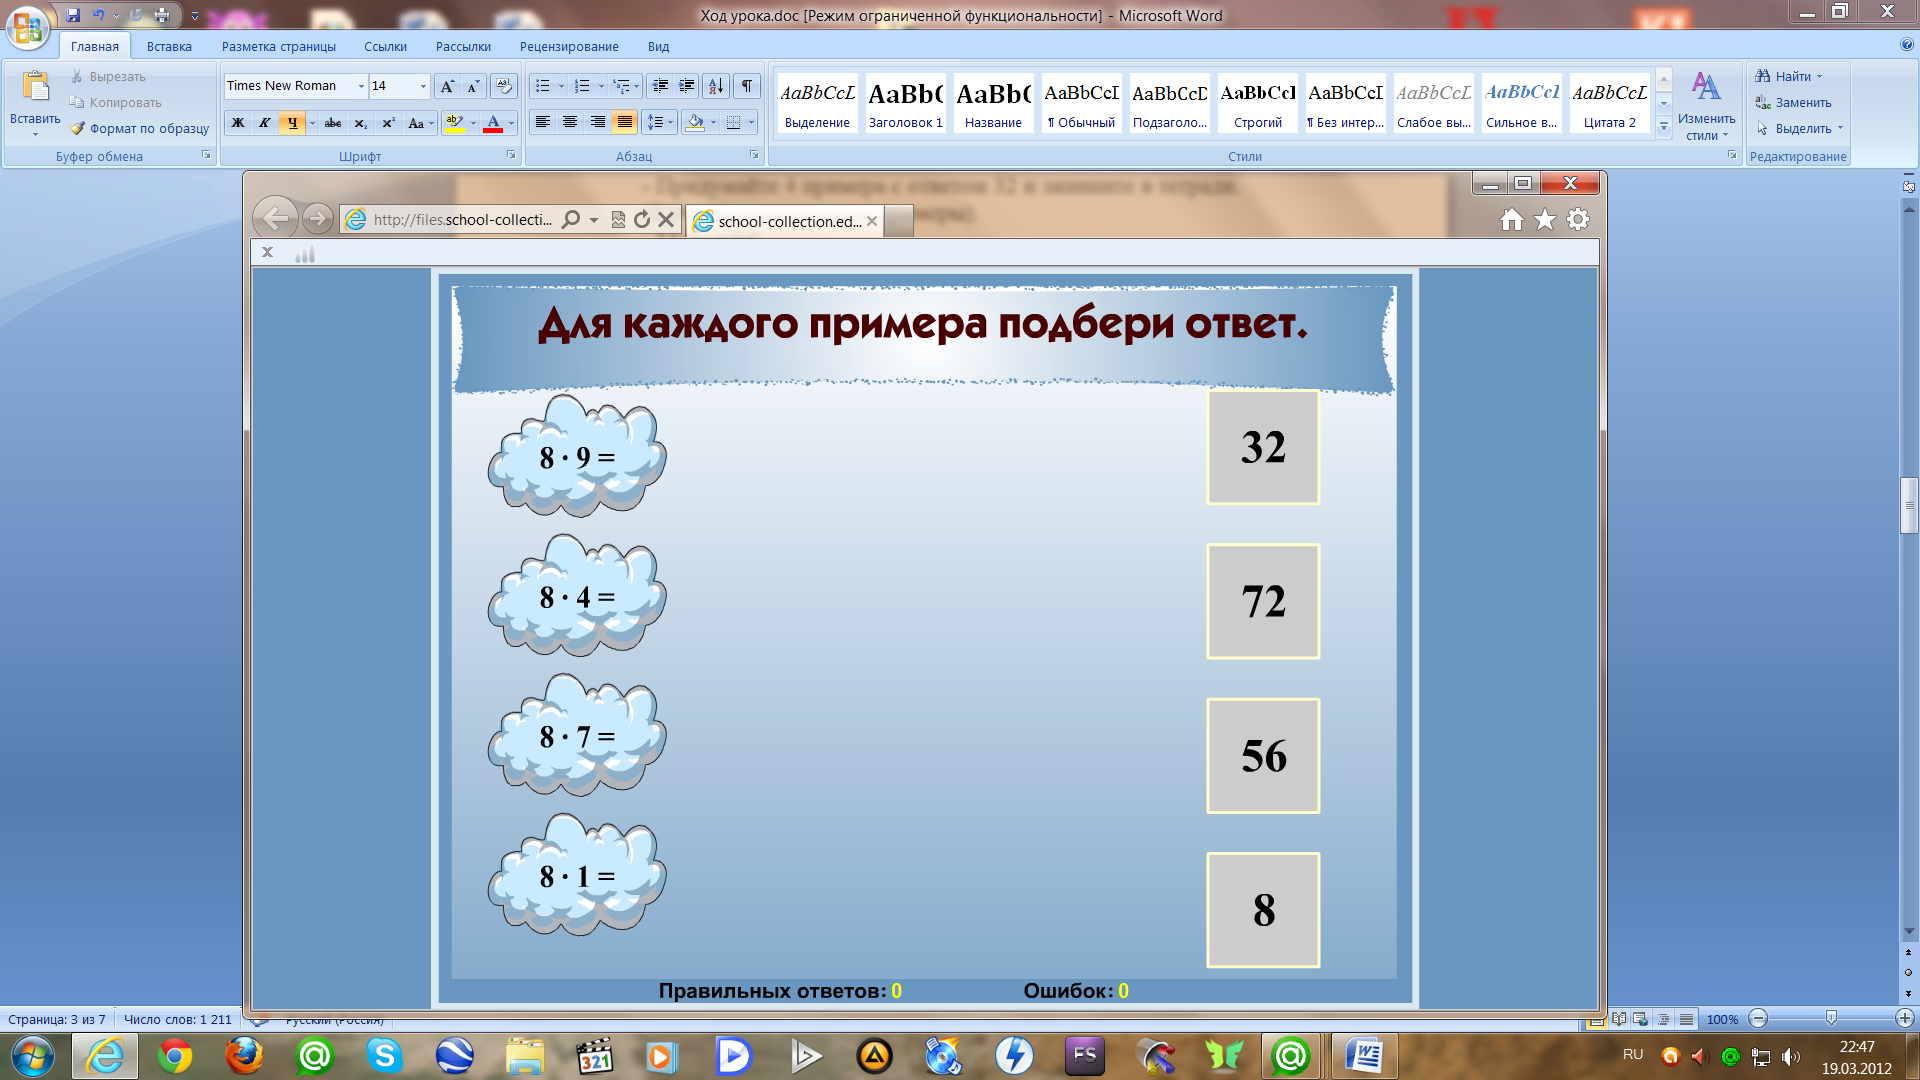 Http files school collection ru. Запиши пример на сложение используя цифры 1,3,4 ответы.